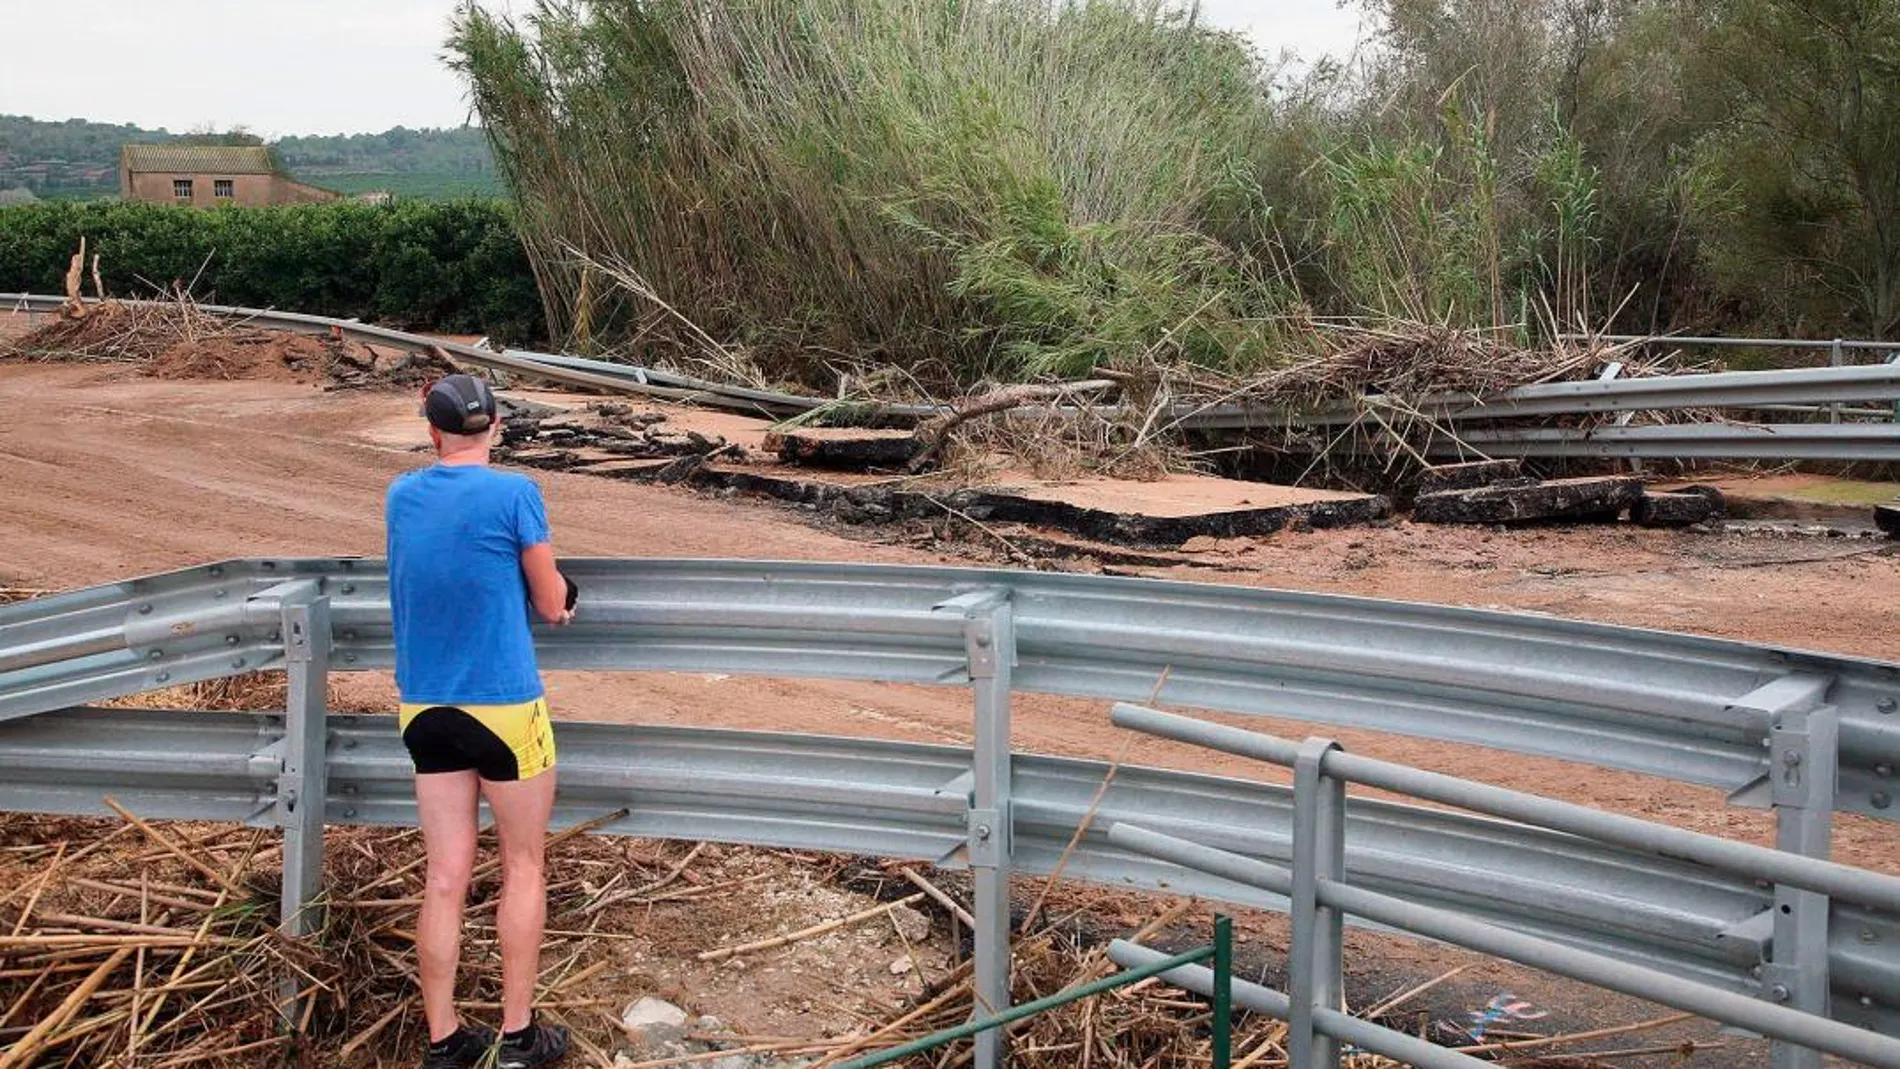 Vista de un tramo de la carretera C-12 entre Amosta y Tortosa afectado por los efectos del temporal sufrido en la zona. / Foto: Efe